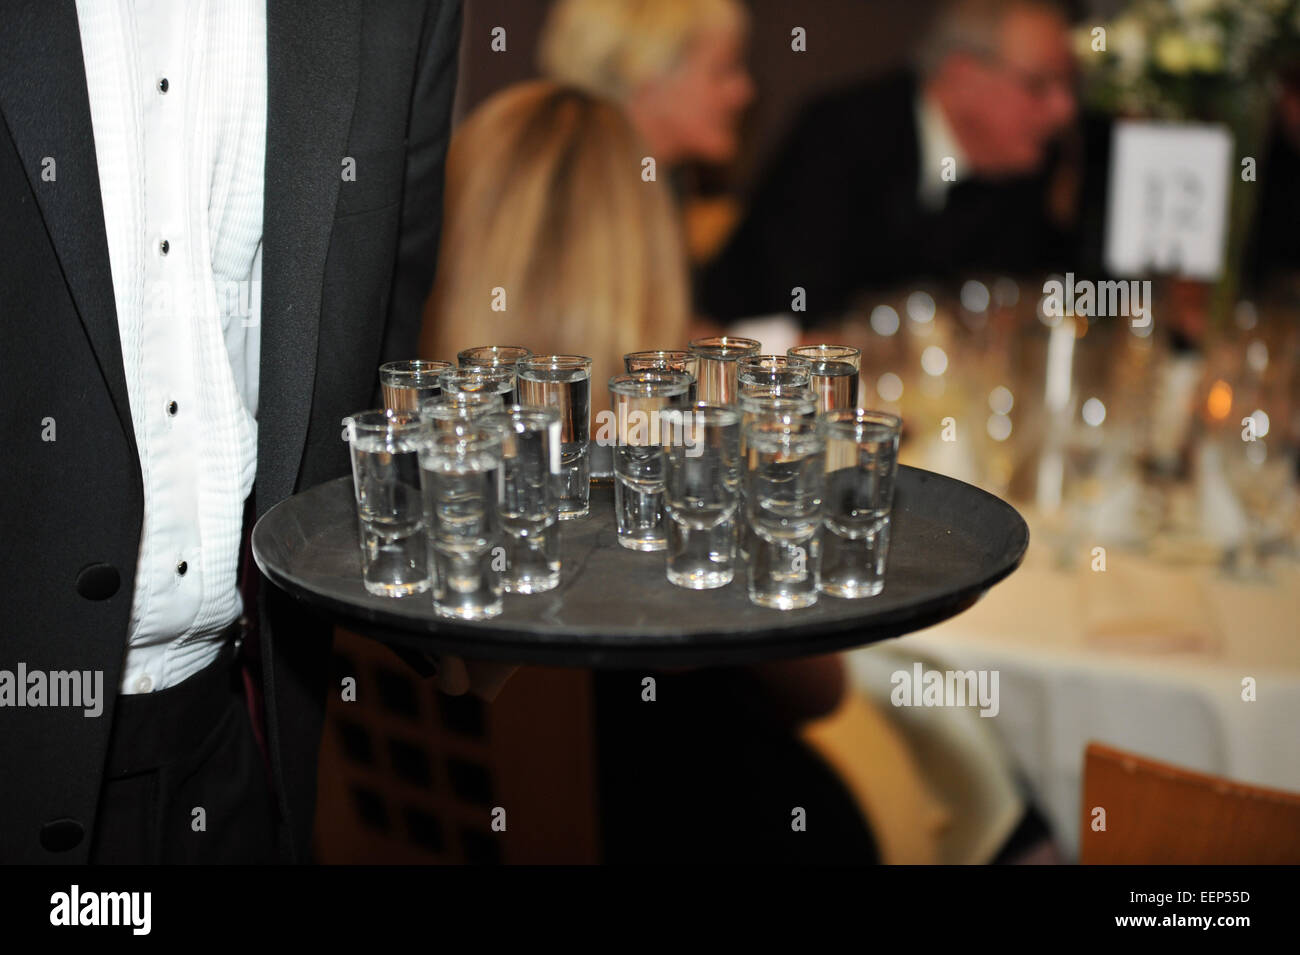 Culture potable au Royaume-Uni, la vodka shots, partie des boissons. Banque D'Images